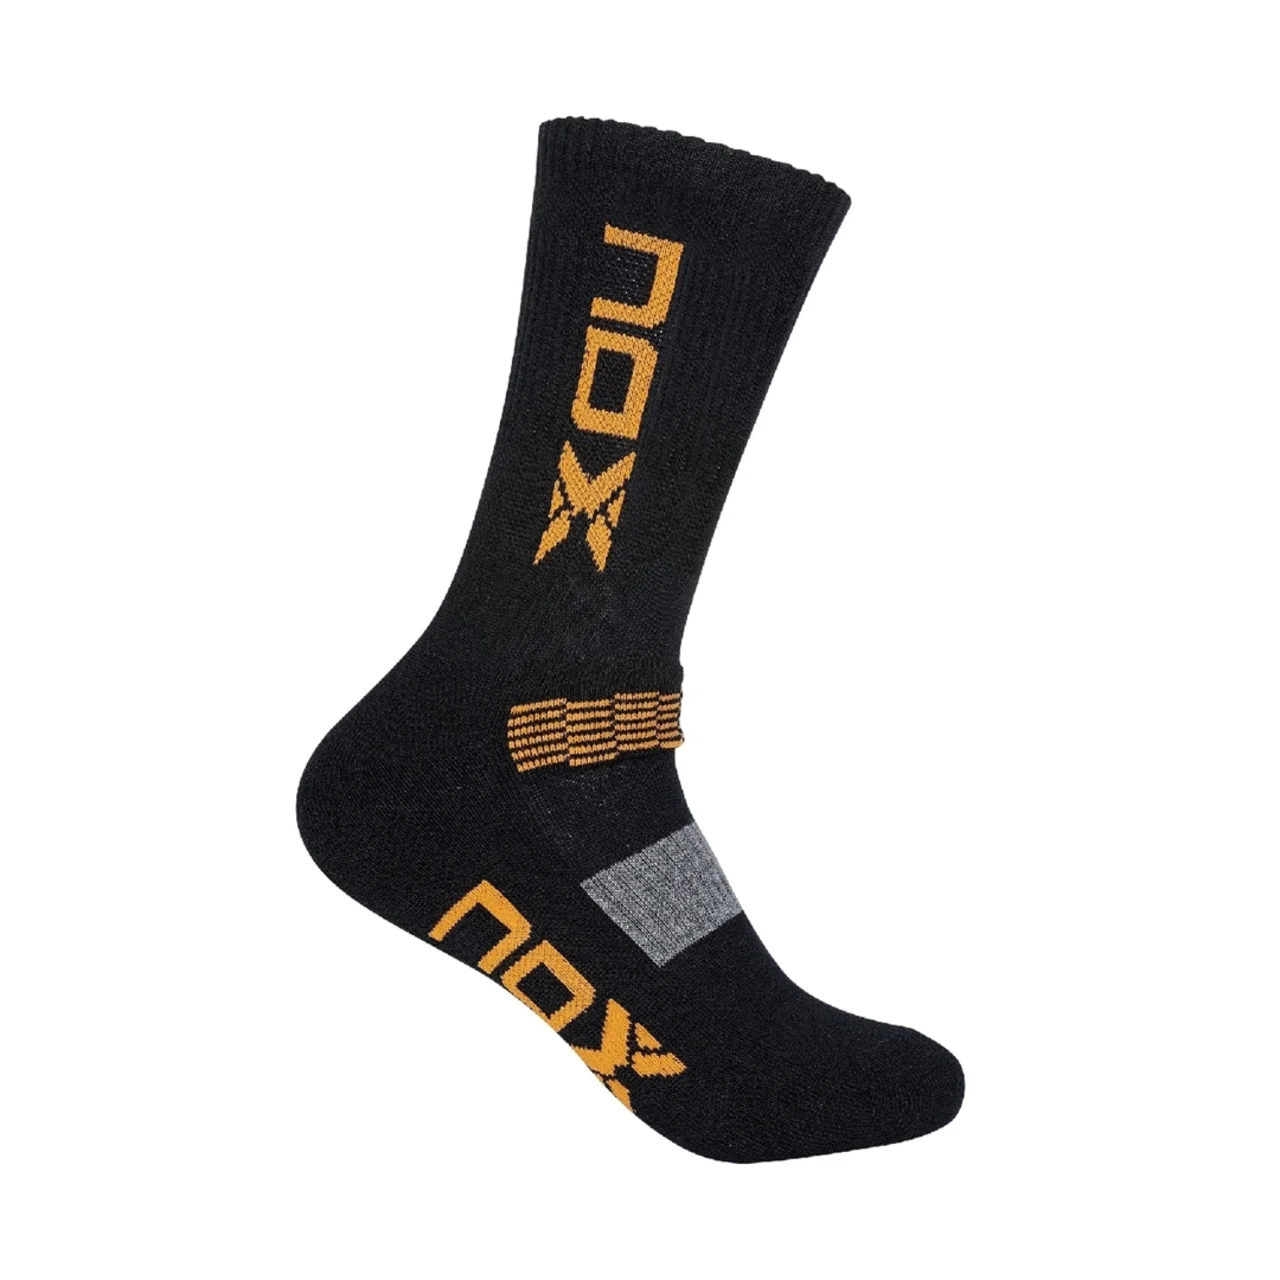 Nox Technical socks 1PK Black/Orange